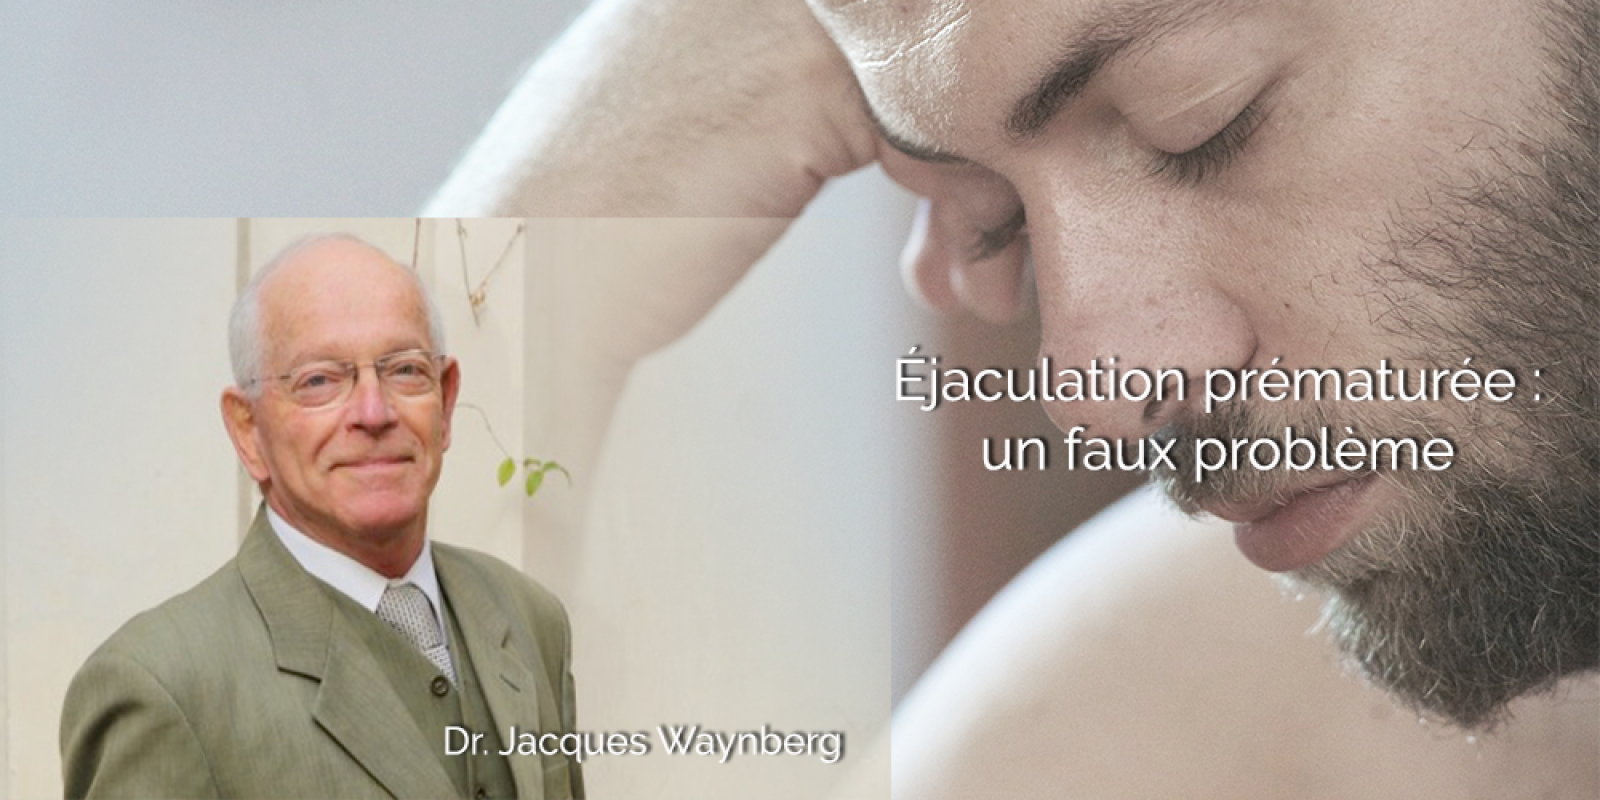 L'éjaculation prématurée, par le Dr Jacques Waynberg.